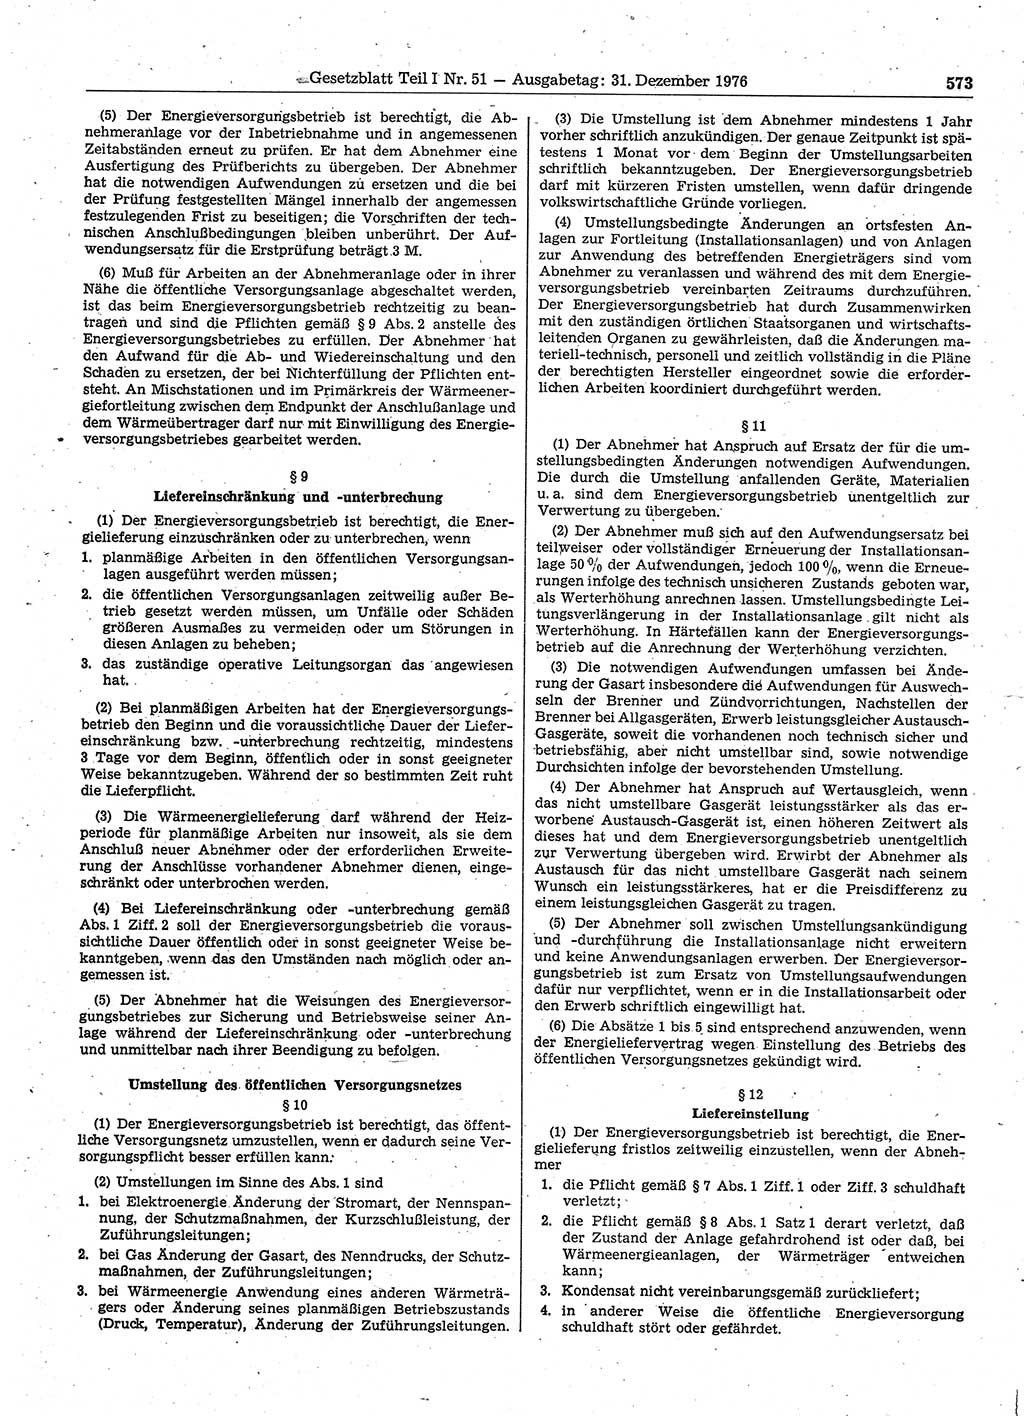 Gesetzblatt (GBl.) der Deutschen Demokratischen Republik (DDR) Teil Ⅰ 1976, Seite 573 (GBl. DDR Ⅰ 1976, S. 573)